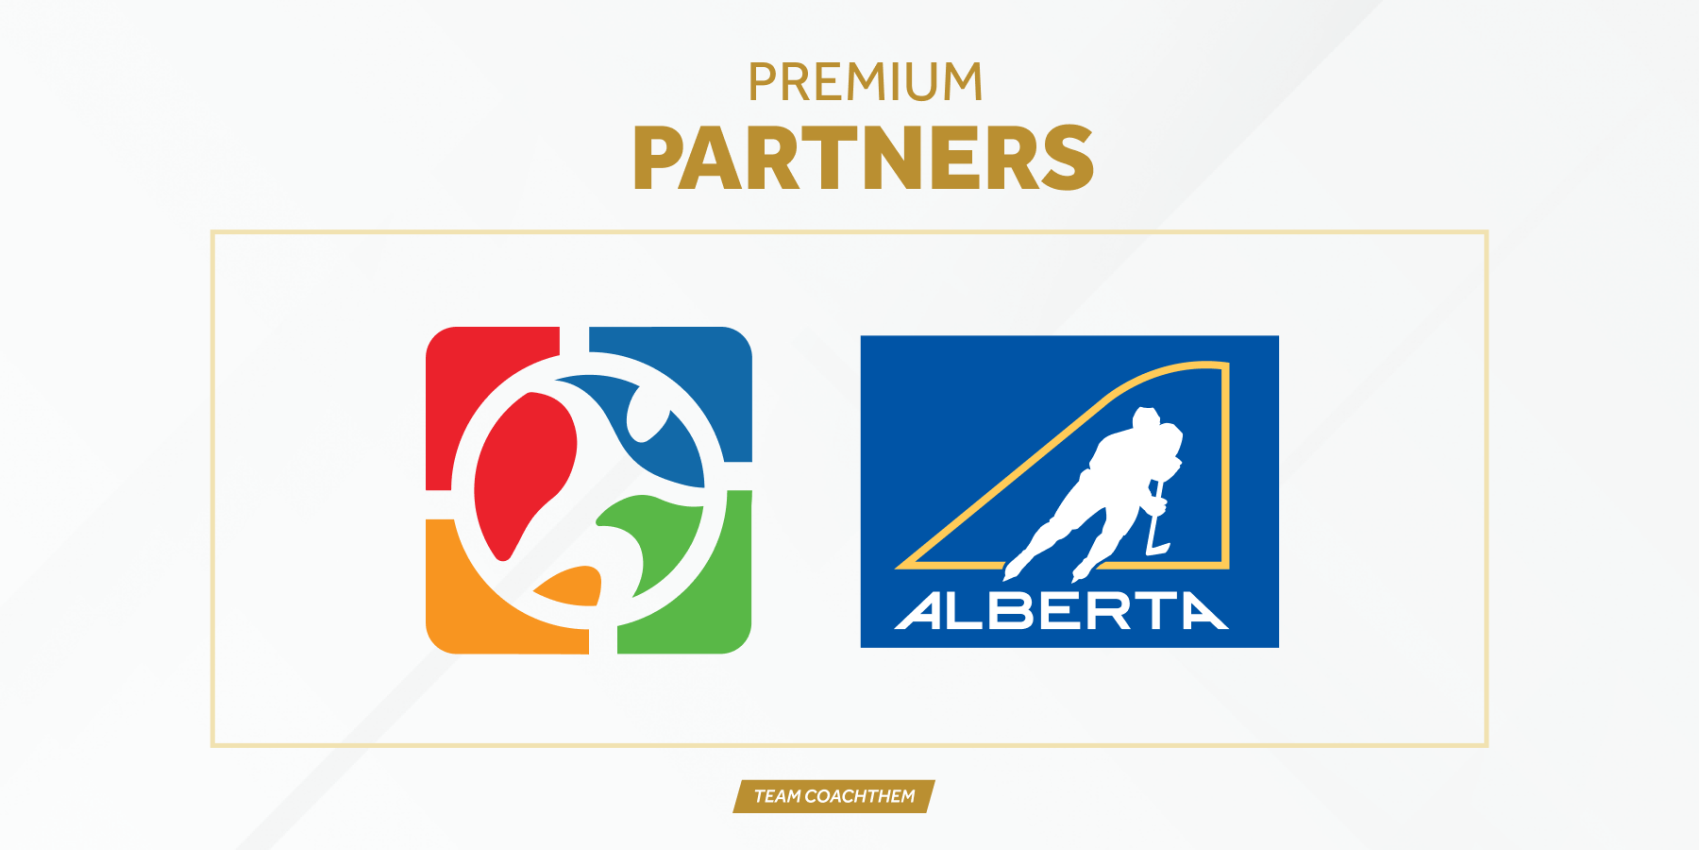 CoachThem partners with Hockey Alberta